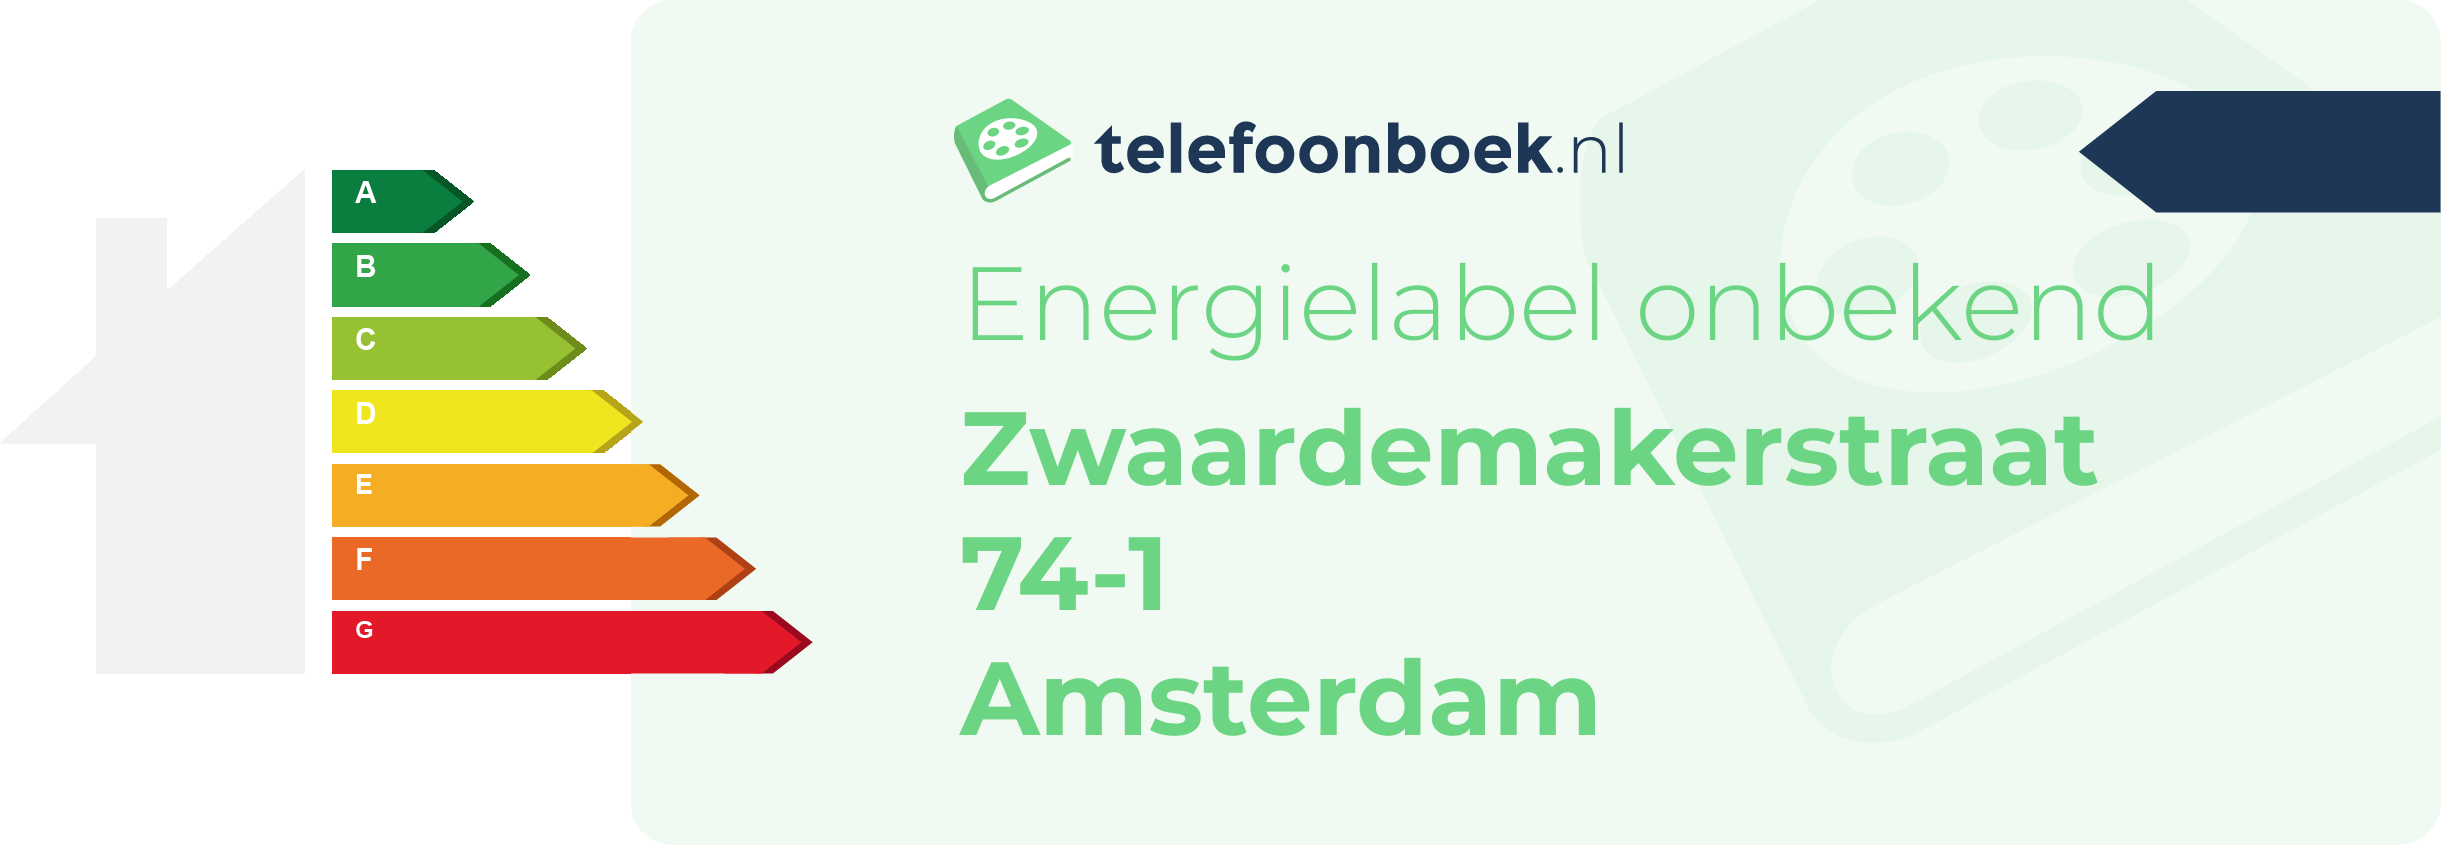 Energielabel Zwaardemakerstraat 74-1 Amsterdam